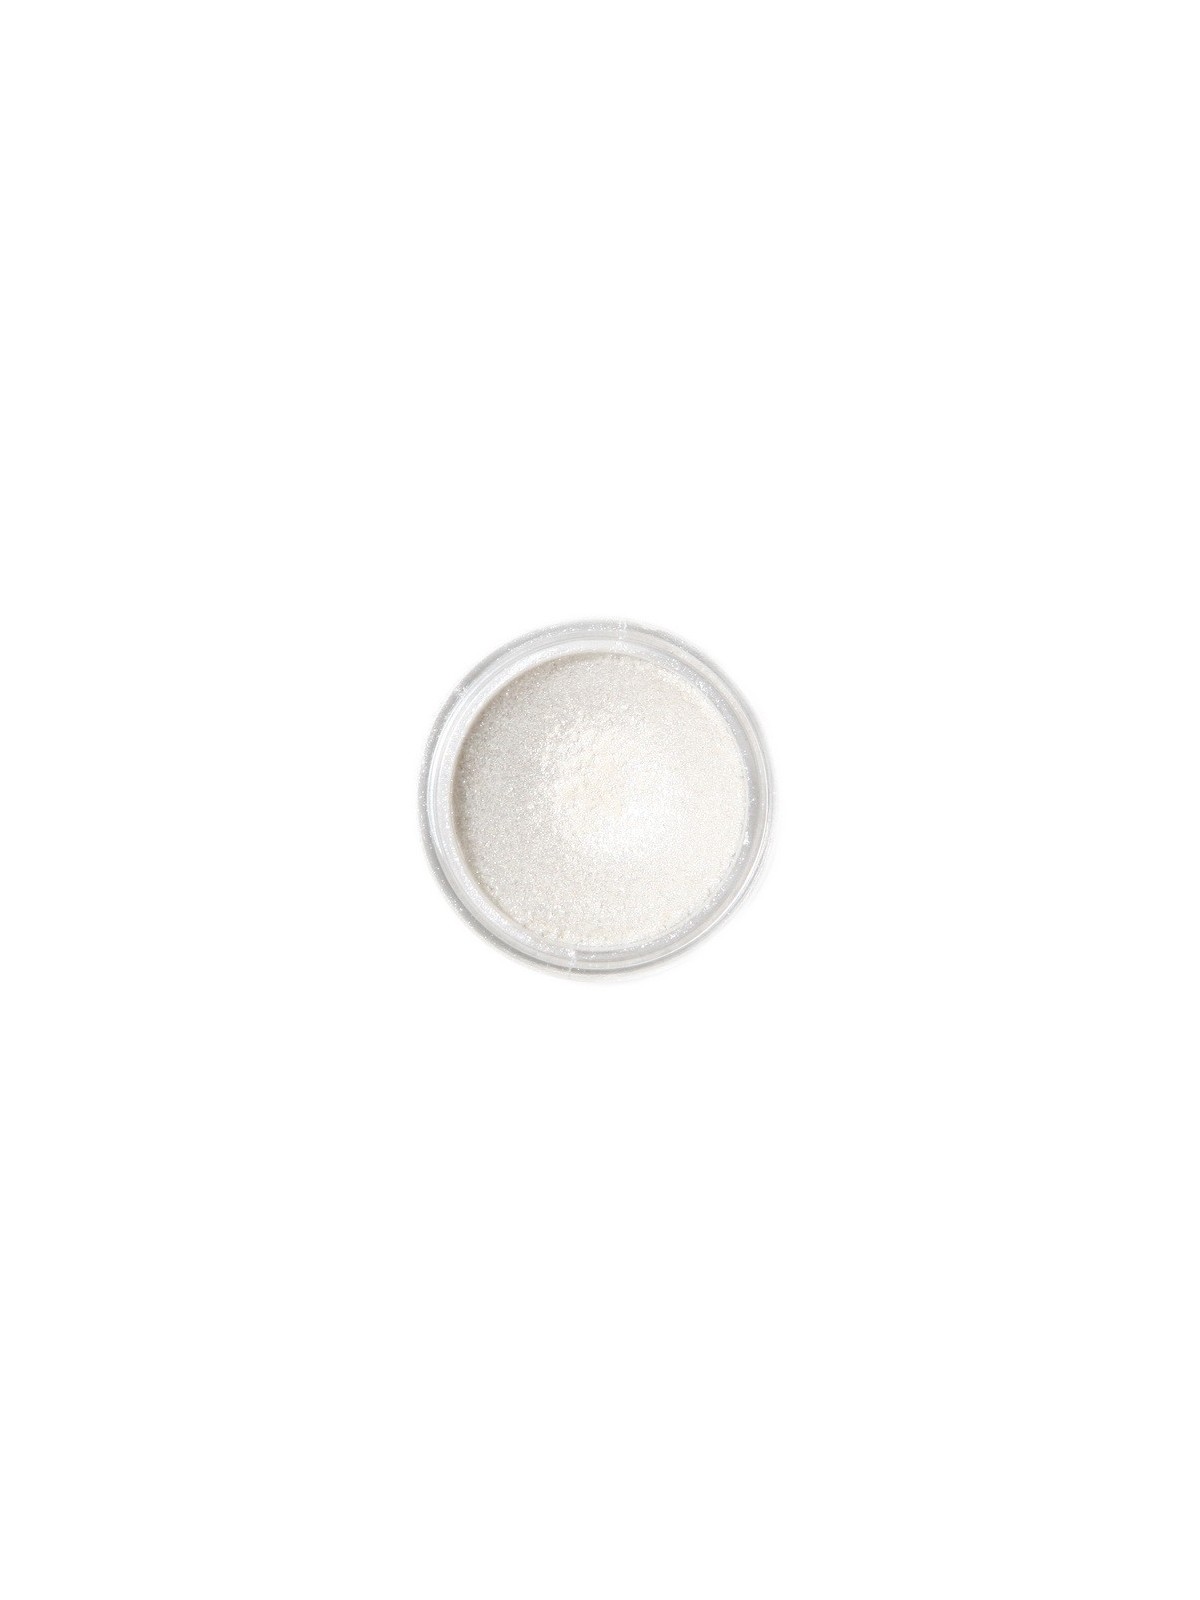 Dekorativní prachová perleťová barva Fractal - Sparkling White, Szikrázó fehér (3,5 g)